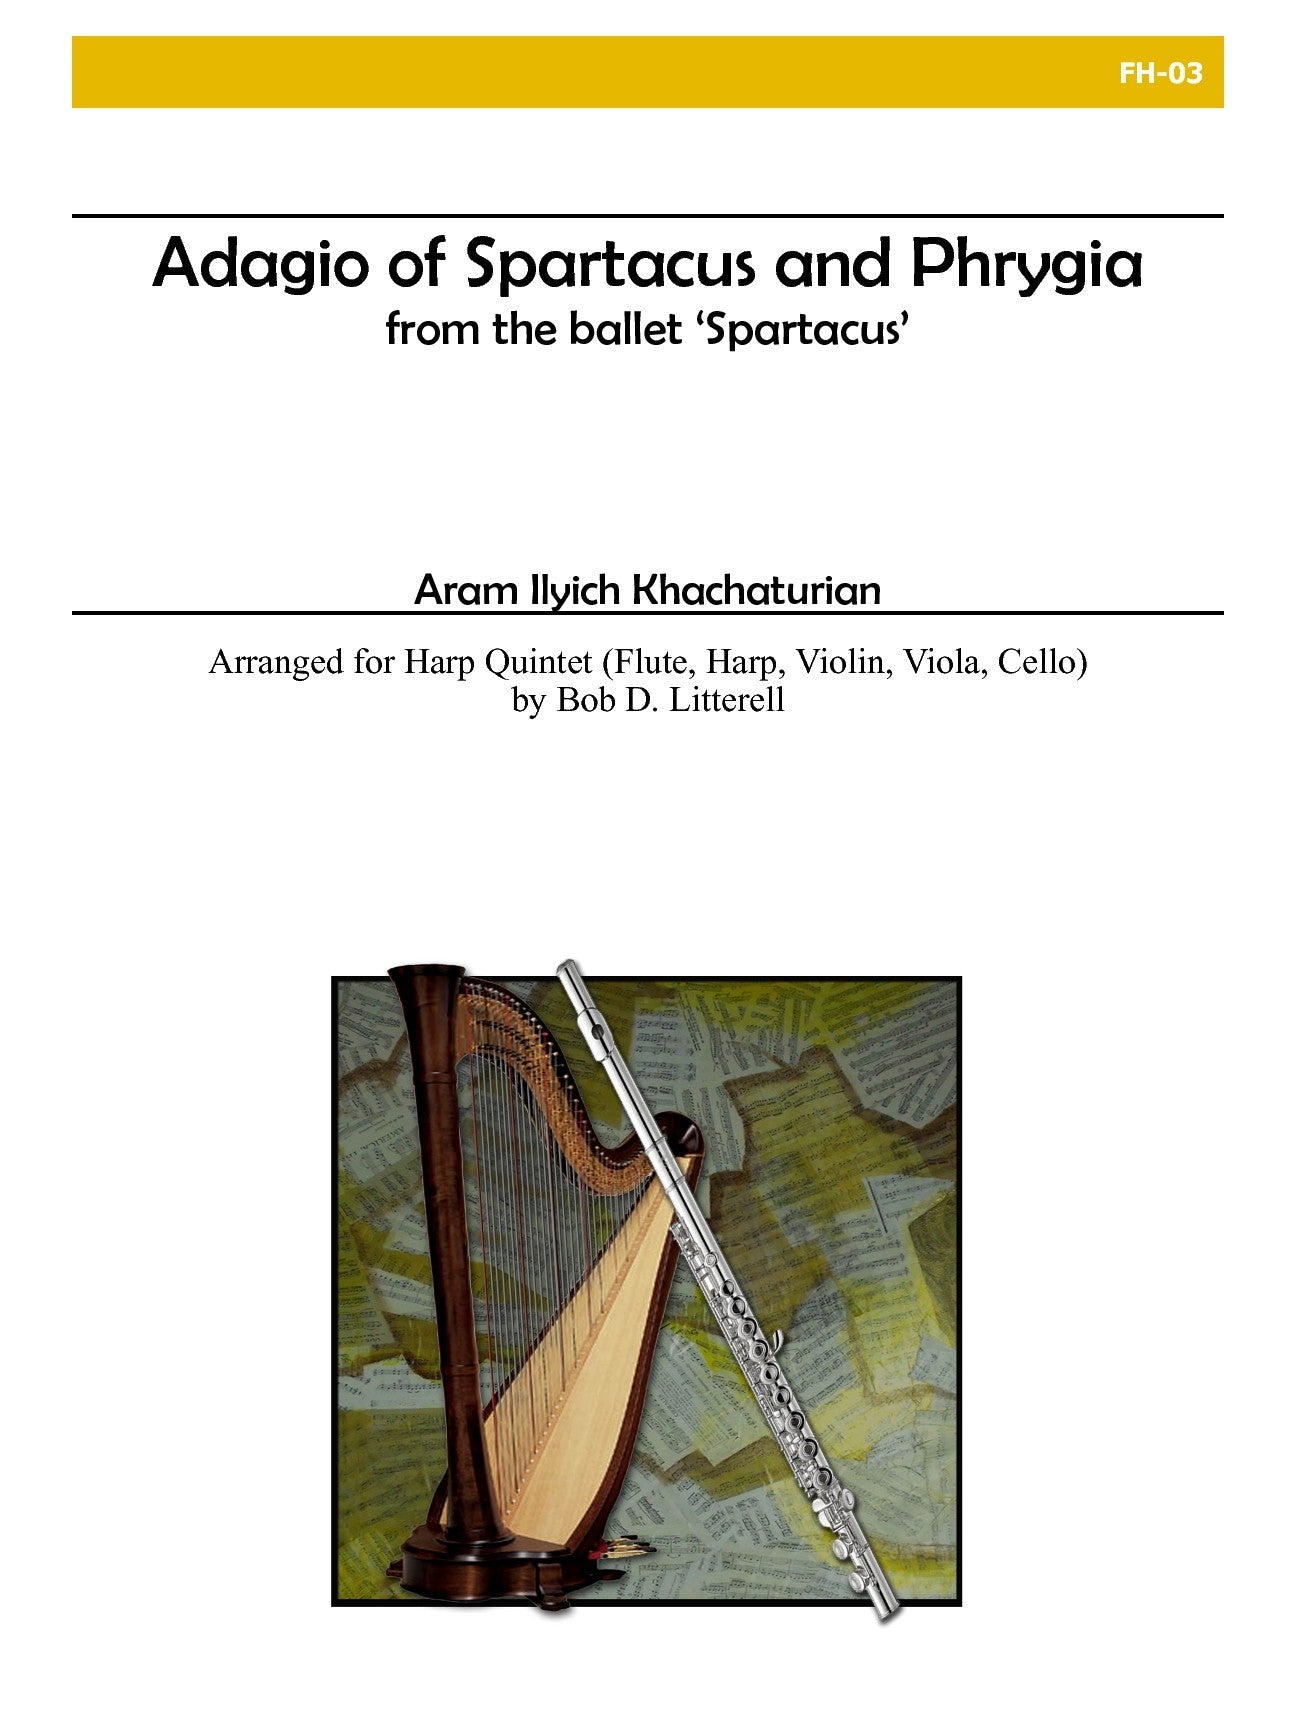 Khachaturian: Adagio of Spartacus and Phrygia (arr. for harp quintet)